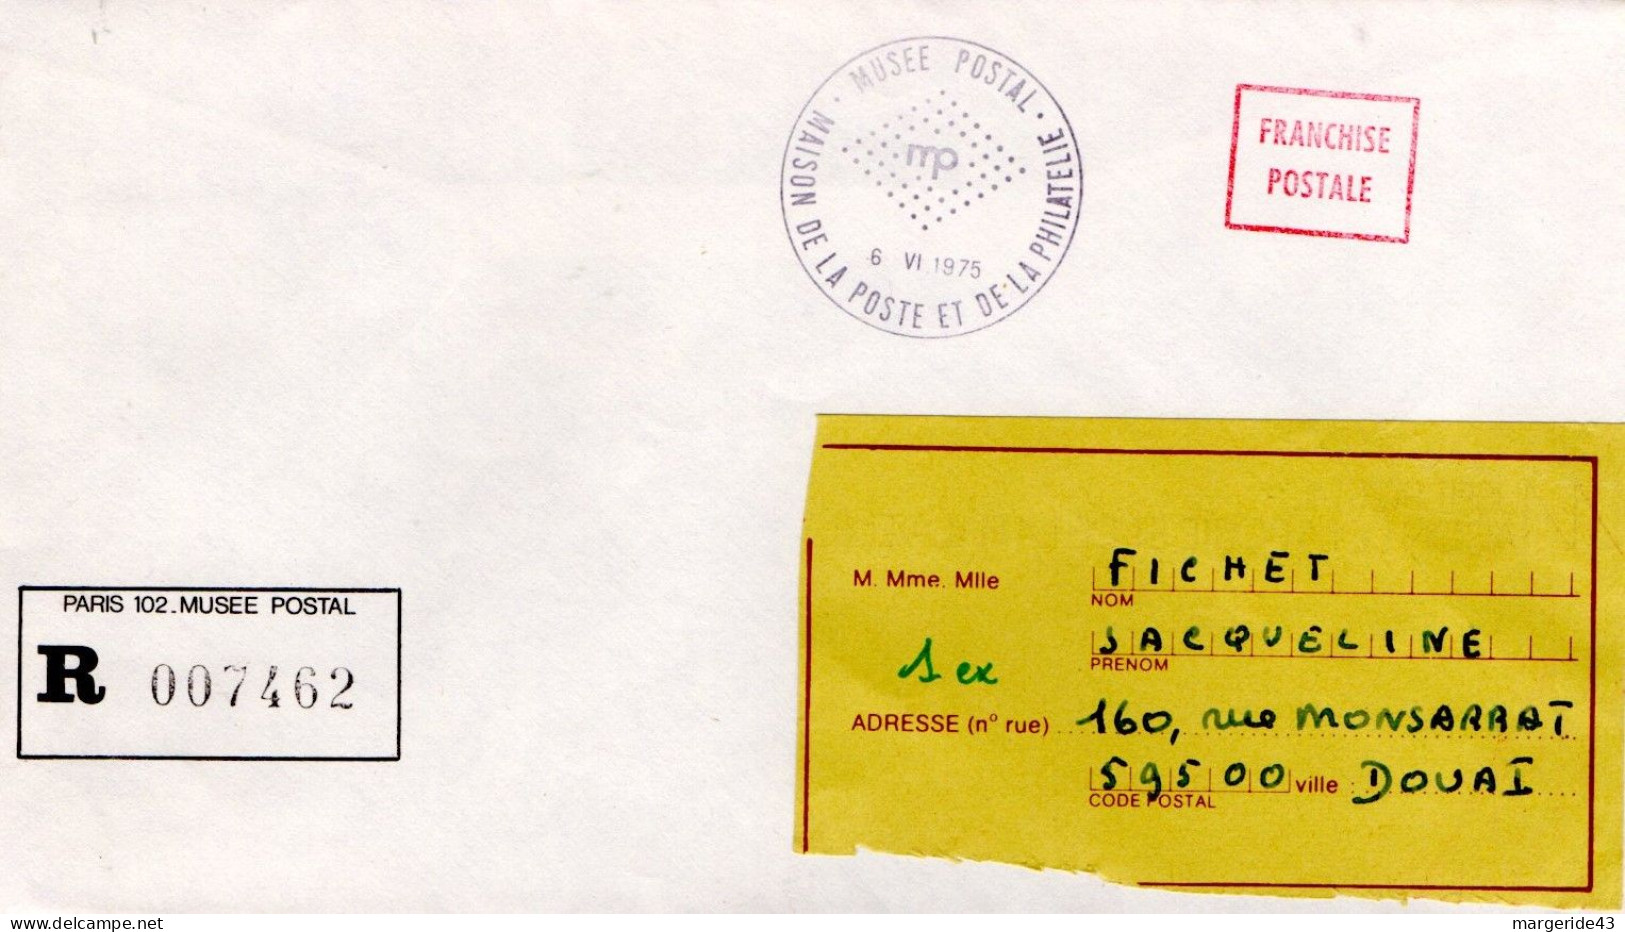 LETTRE EN FRANCHISE POSTALE EN......RECOMMANDEE DE PARIS 102 MUSEE POSTAL 1975 - Postal Rates